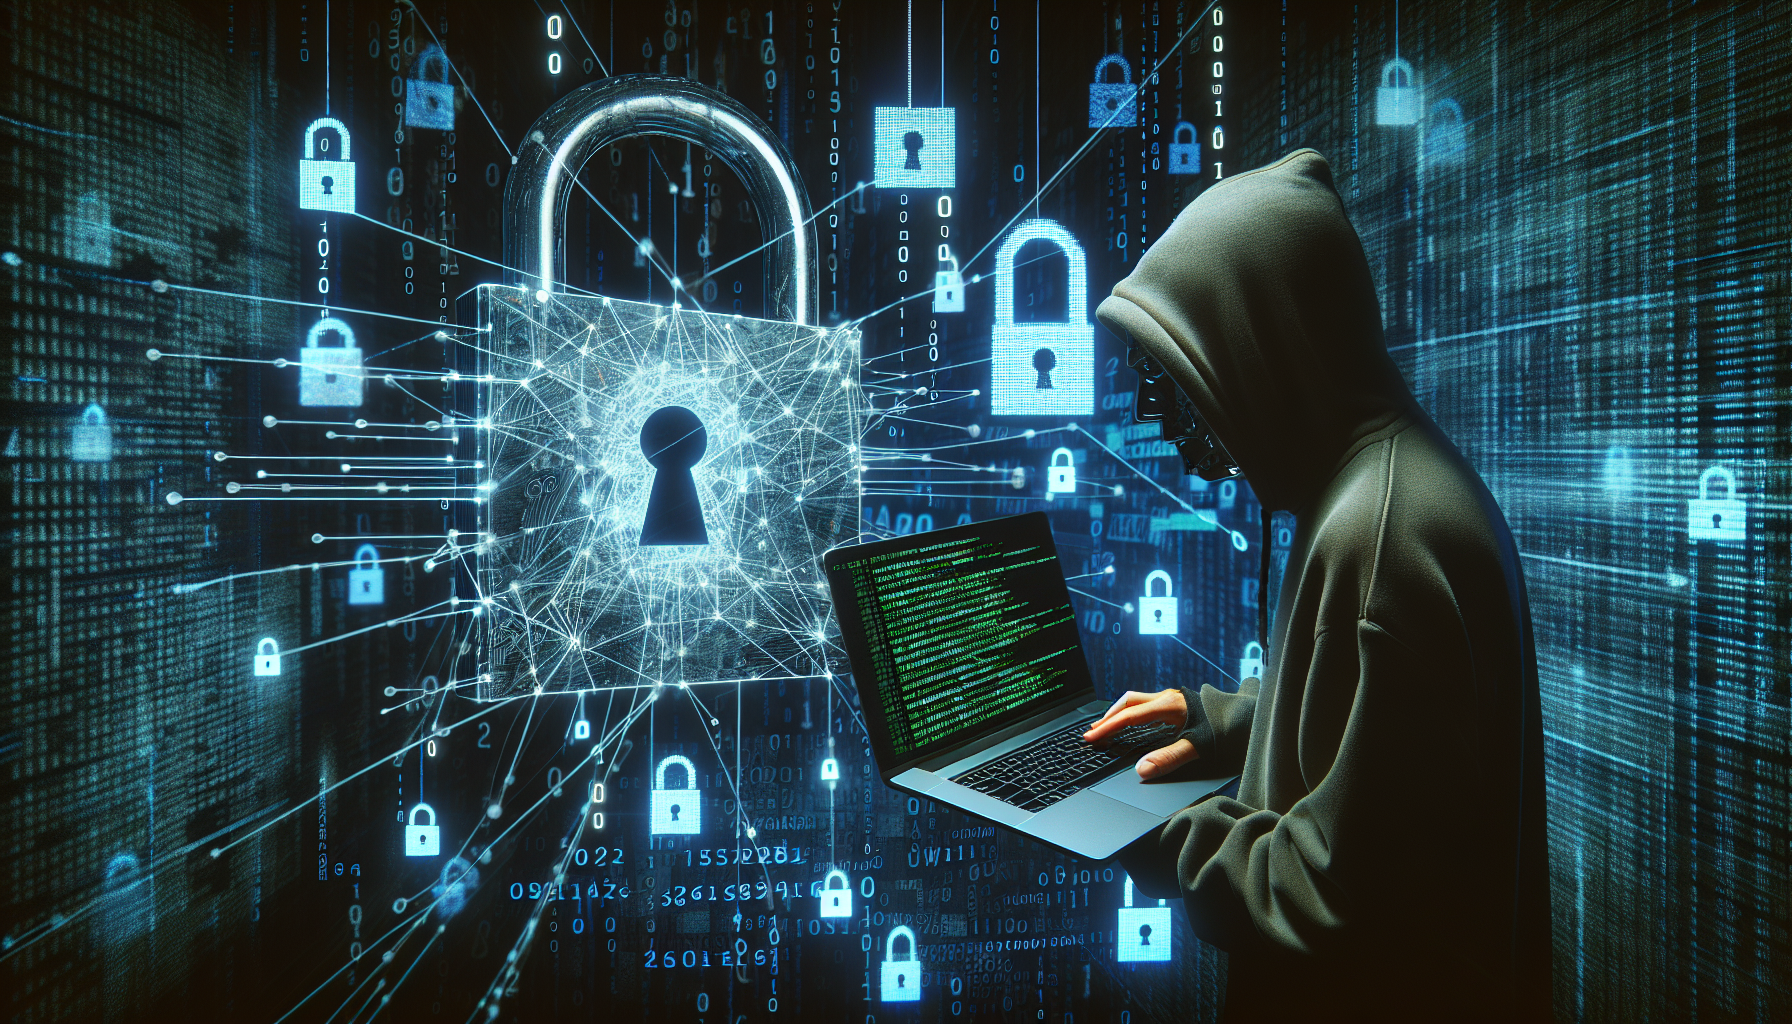 découvrez nos formations et certifications en cybersécurité pour apprendre les stratégies et techniques indispensables pour protéger les systèmes informatiques.